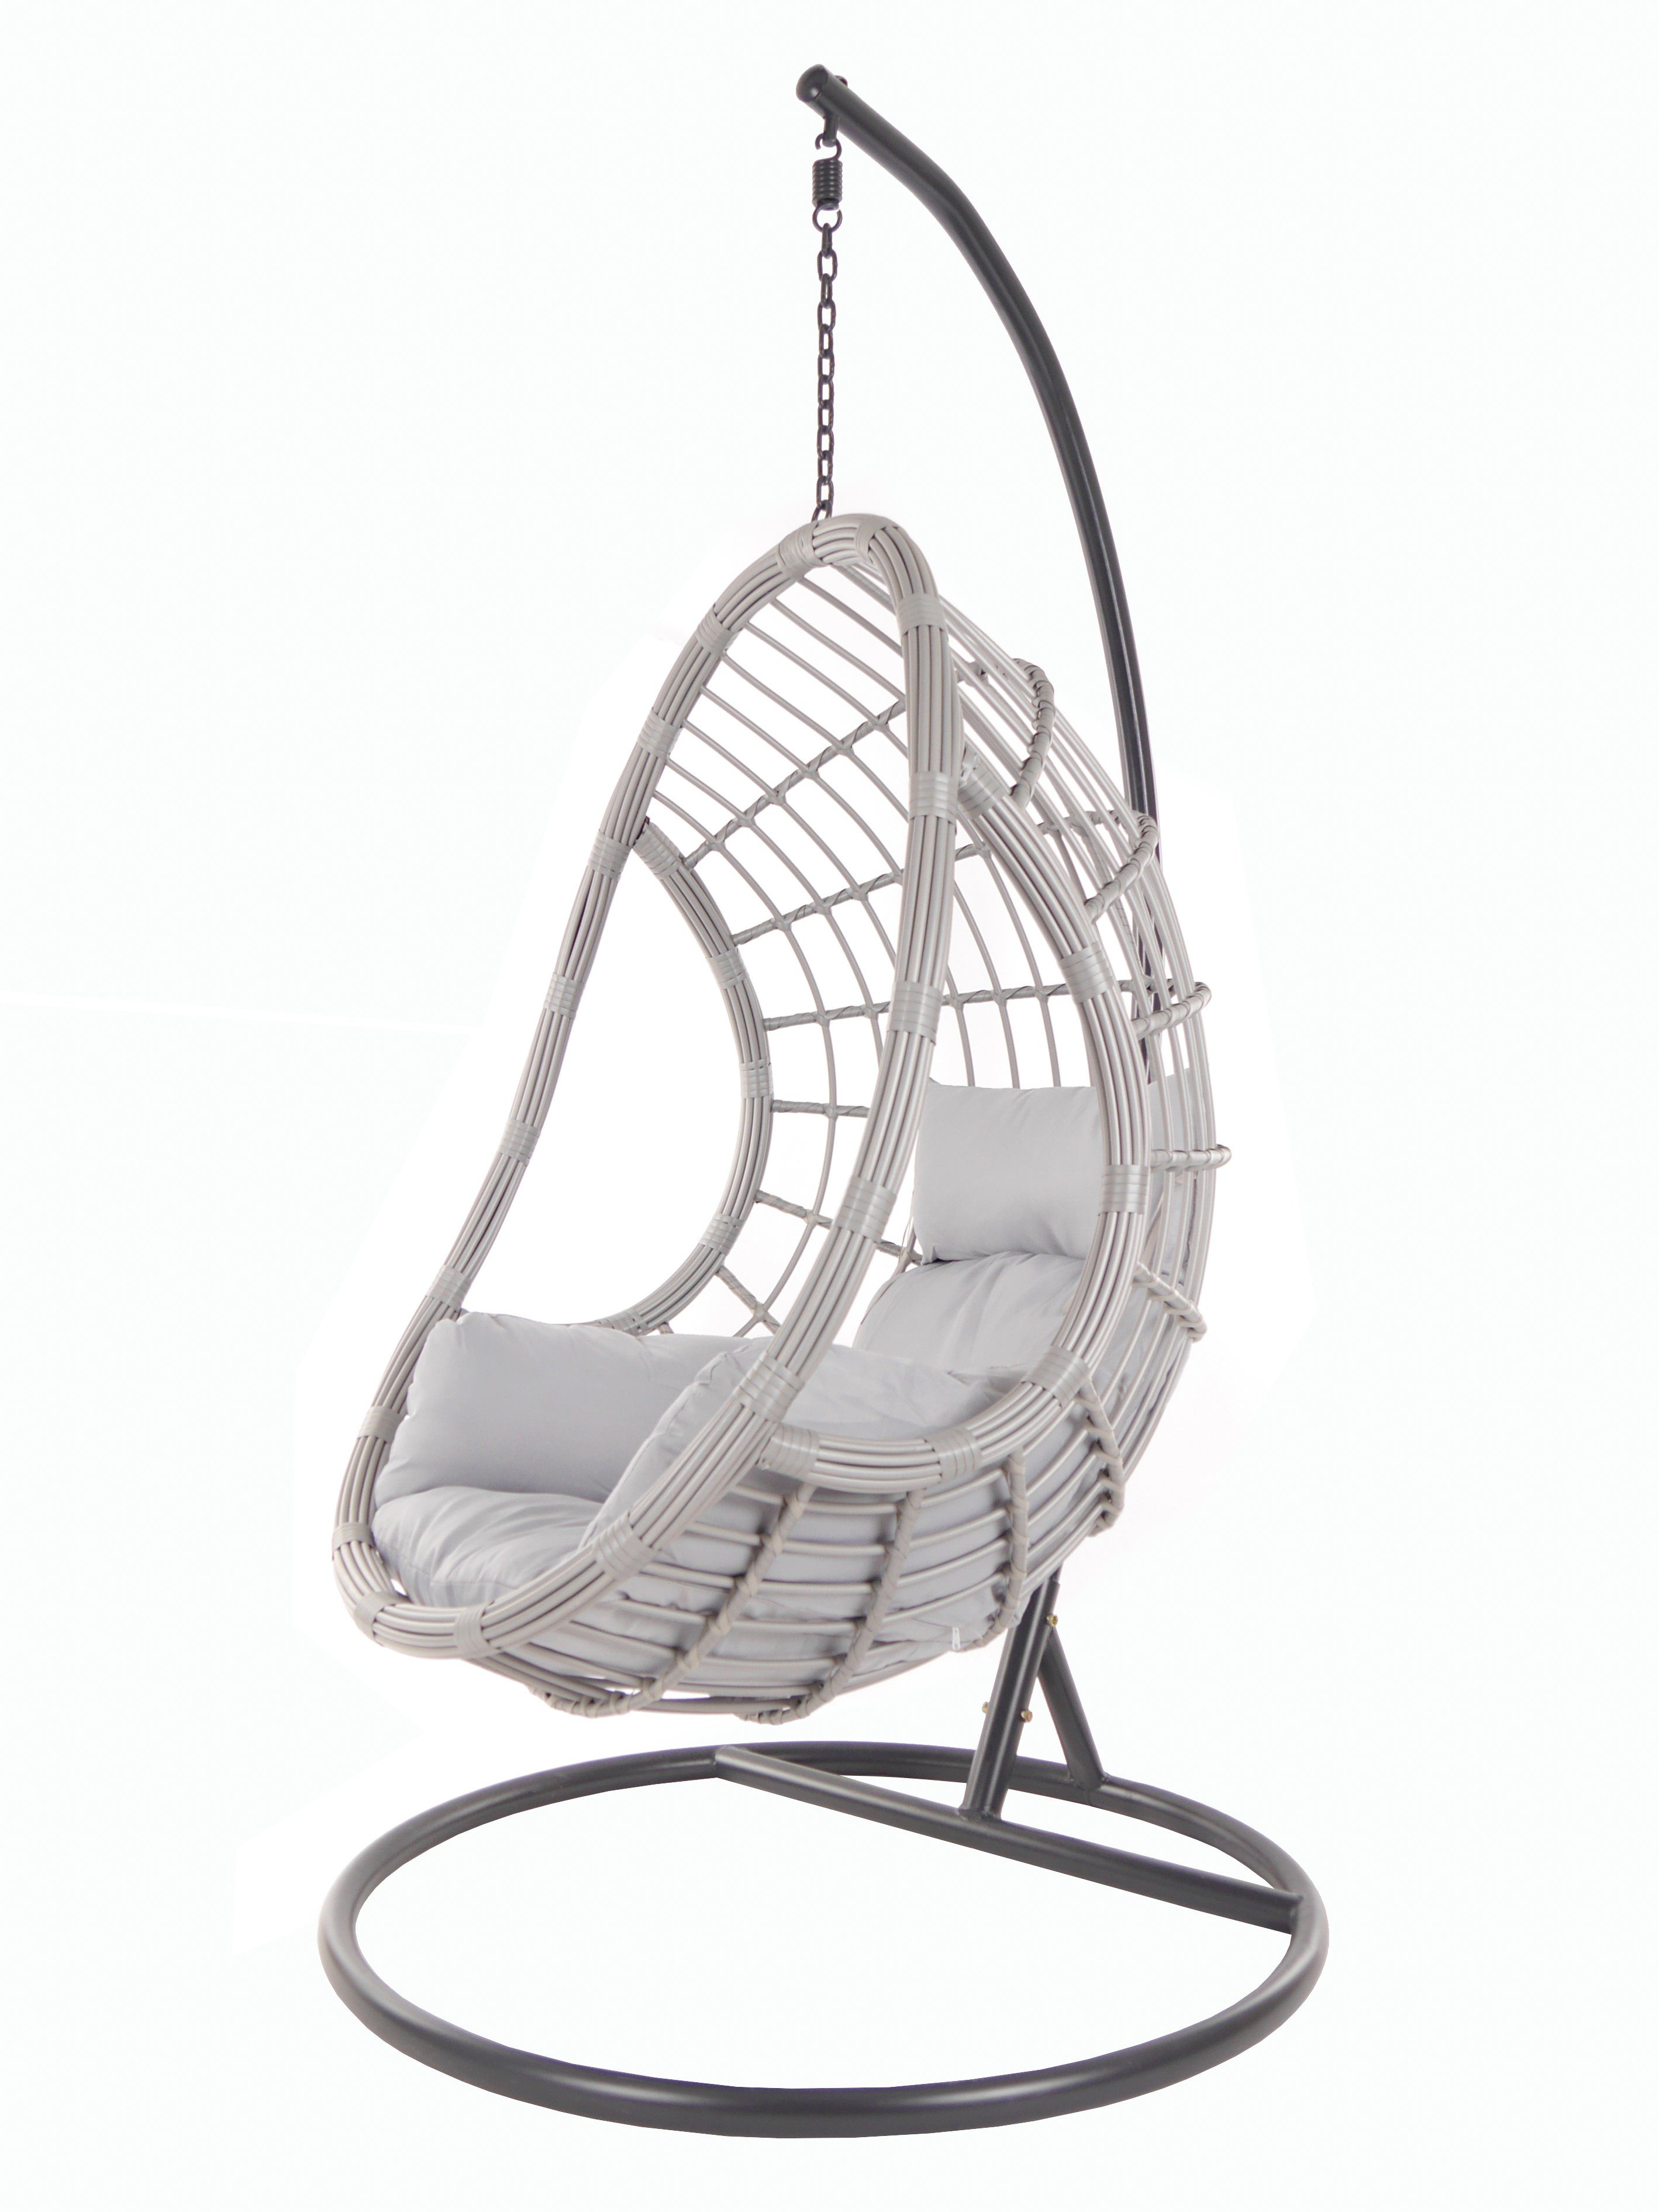 KIDEO Hängesessel PALMANOVA lightgrey, Schwebesessel mit Gestell und Kissen, Swing Chair, Loungemöbel grau (8008 cloud)